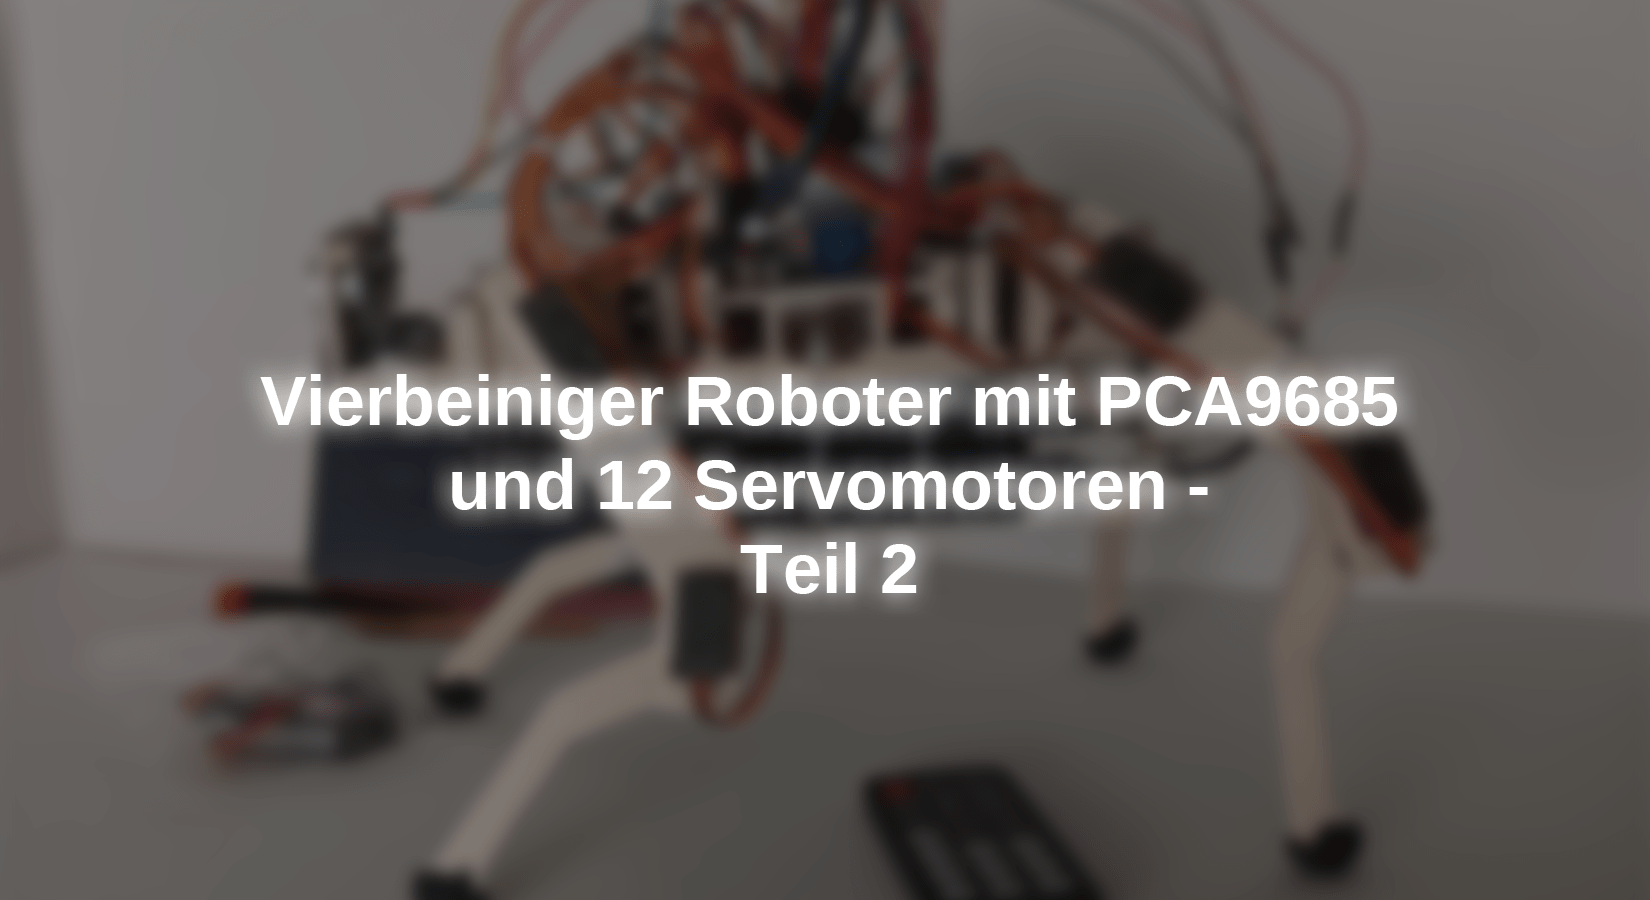 Vierbeiniger Roboter mit PCA9685 und 12 Servomotoren - Teil 2 - AZ-Delivery